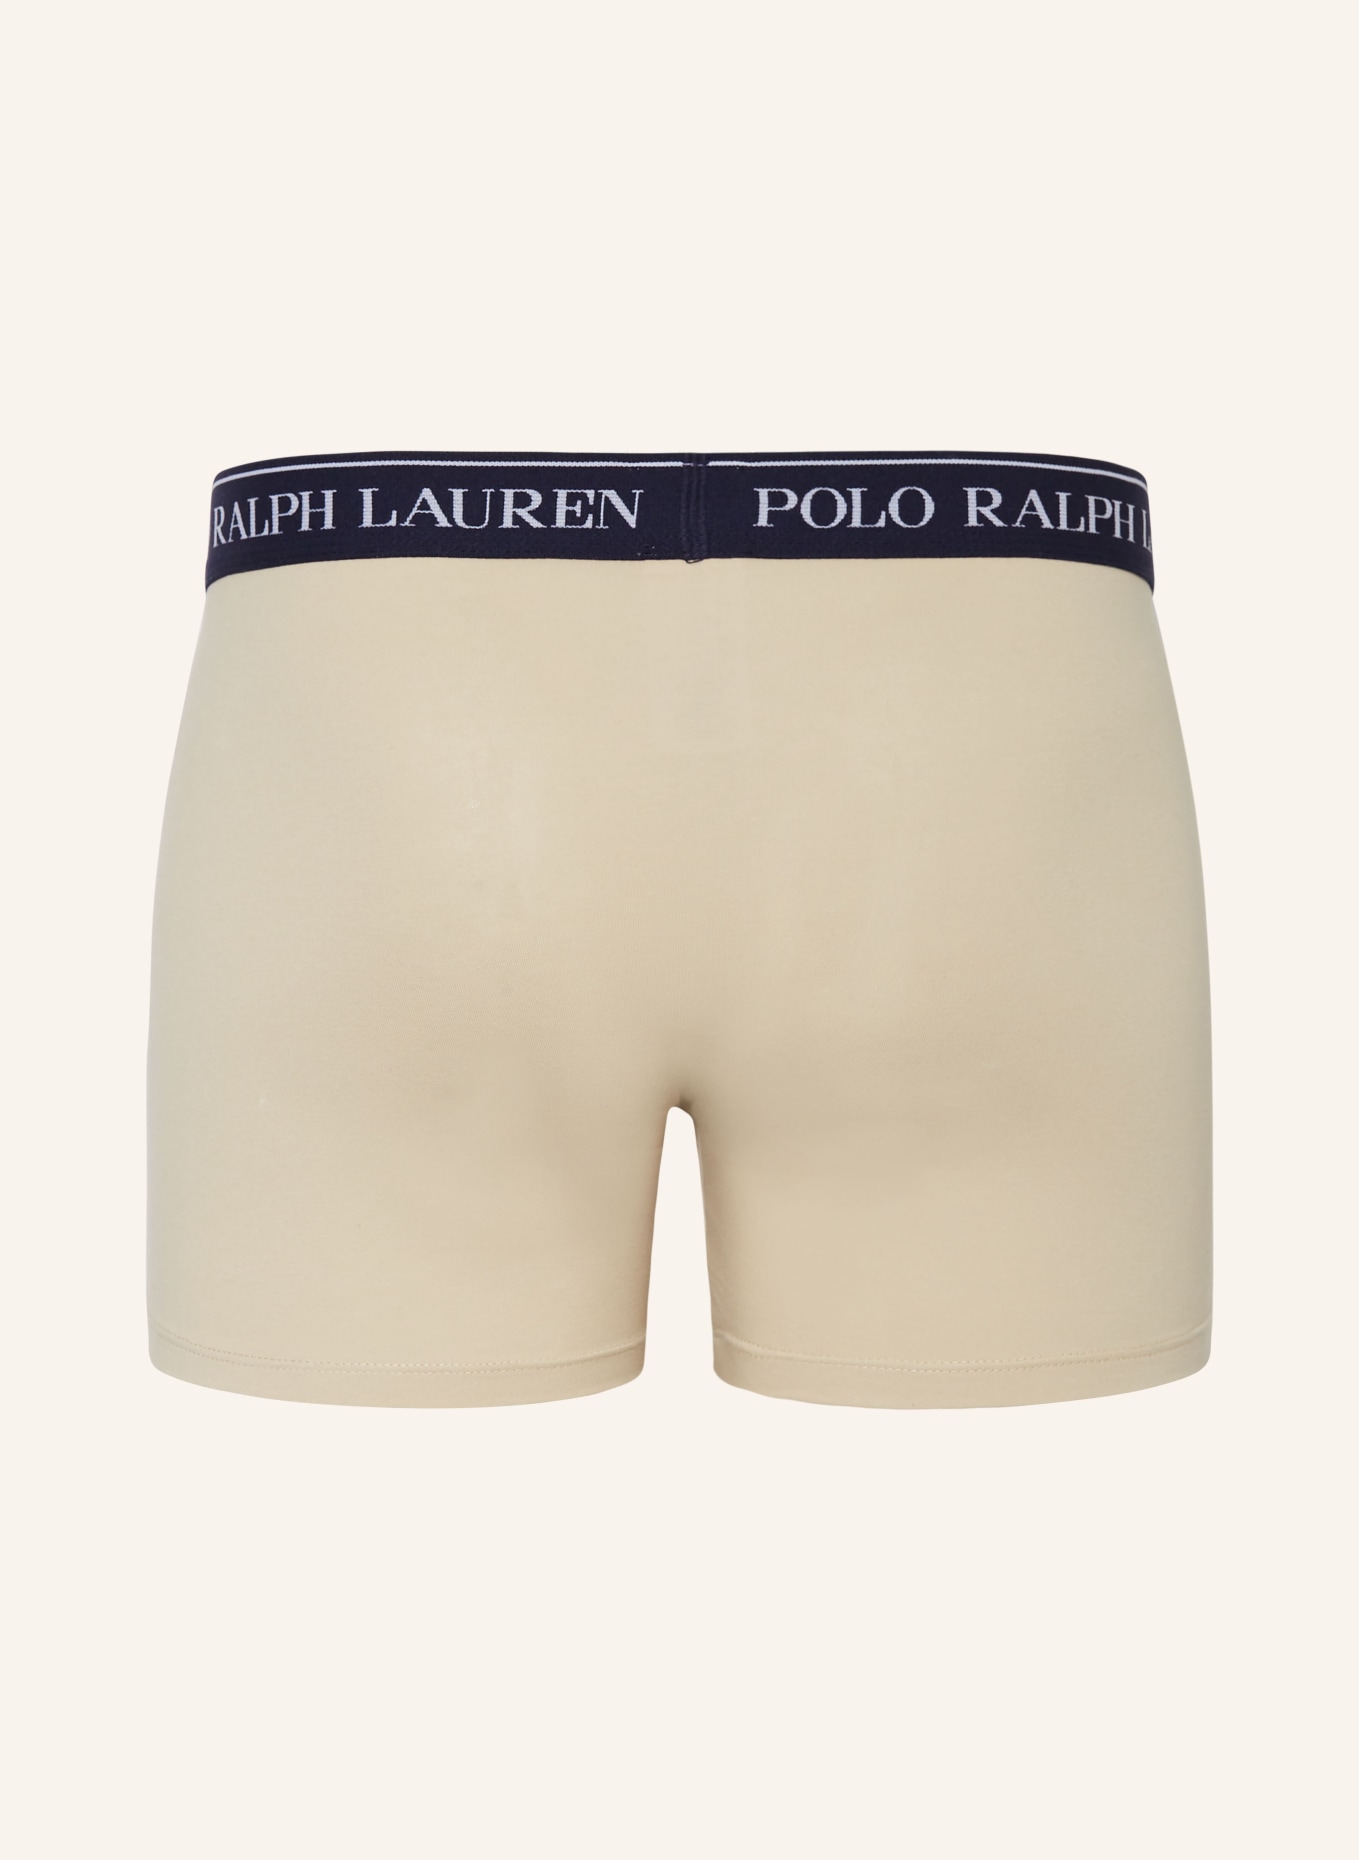 POLO RALPH LAUREN 3-pack boxer shorts, Color: DARK BLUE/ BLUE/ BEIGE (Image 2)